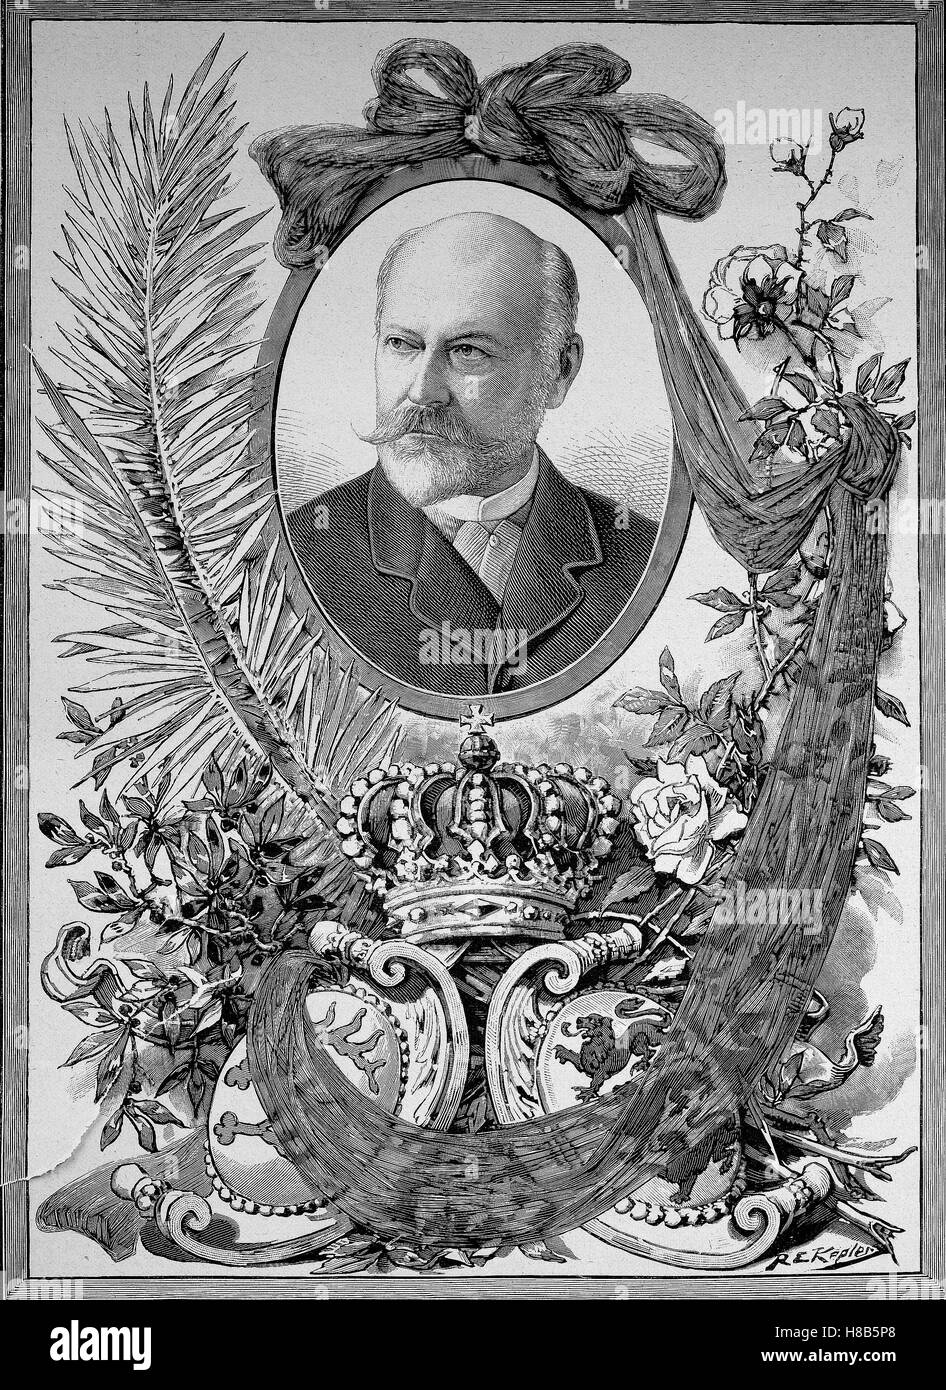 Charles, Karl Friedrich Alexander, Koenig von Wurtemberg ; 6 Mars 1823 - 6 octobre 1891, était roi de Wurtemberg, à partir du 25 juin 1864 jusqu'à sa mort en 1891, gravure sur bois de 1892 Banque D'Images